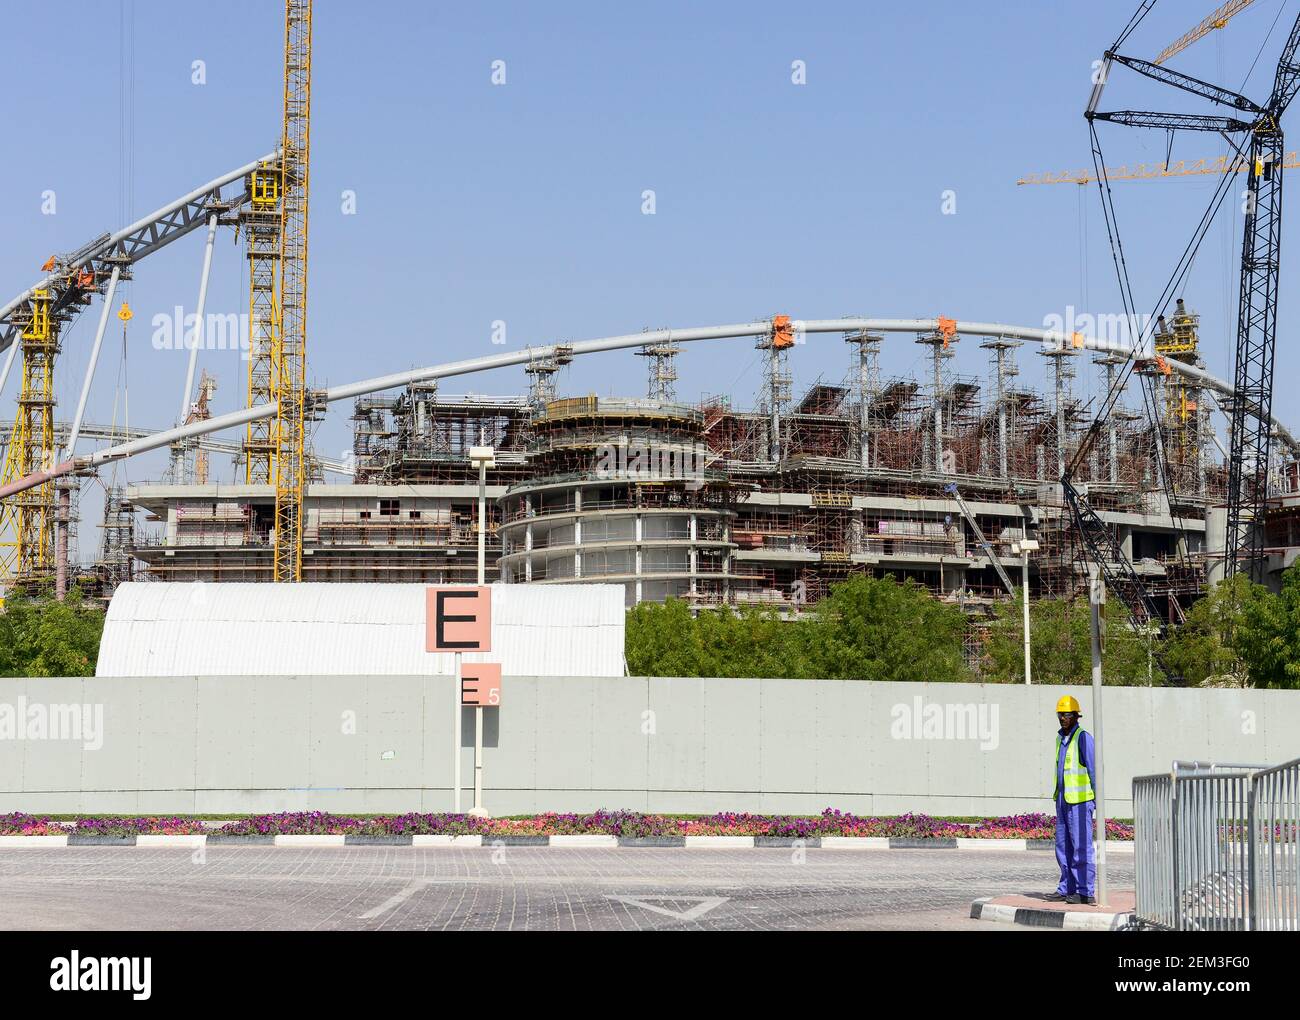 Il Qatar Doha, sito in costruzione Khalifa International Stadium per la Coppa del Mondo FIFA 2022, costruito dal contraente midmac e Sixt contratto / KATAR, Doha, Baustelle Khalifa International Stadium fuer die FIFA Fussballweltmeisterschaft 2022 Foto Stock